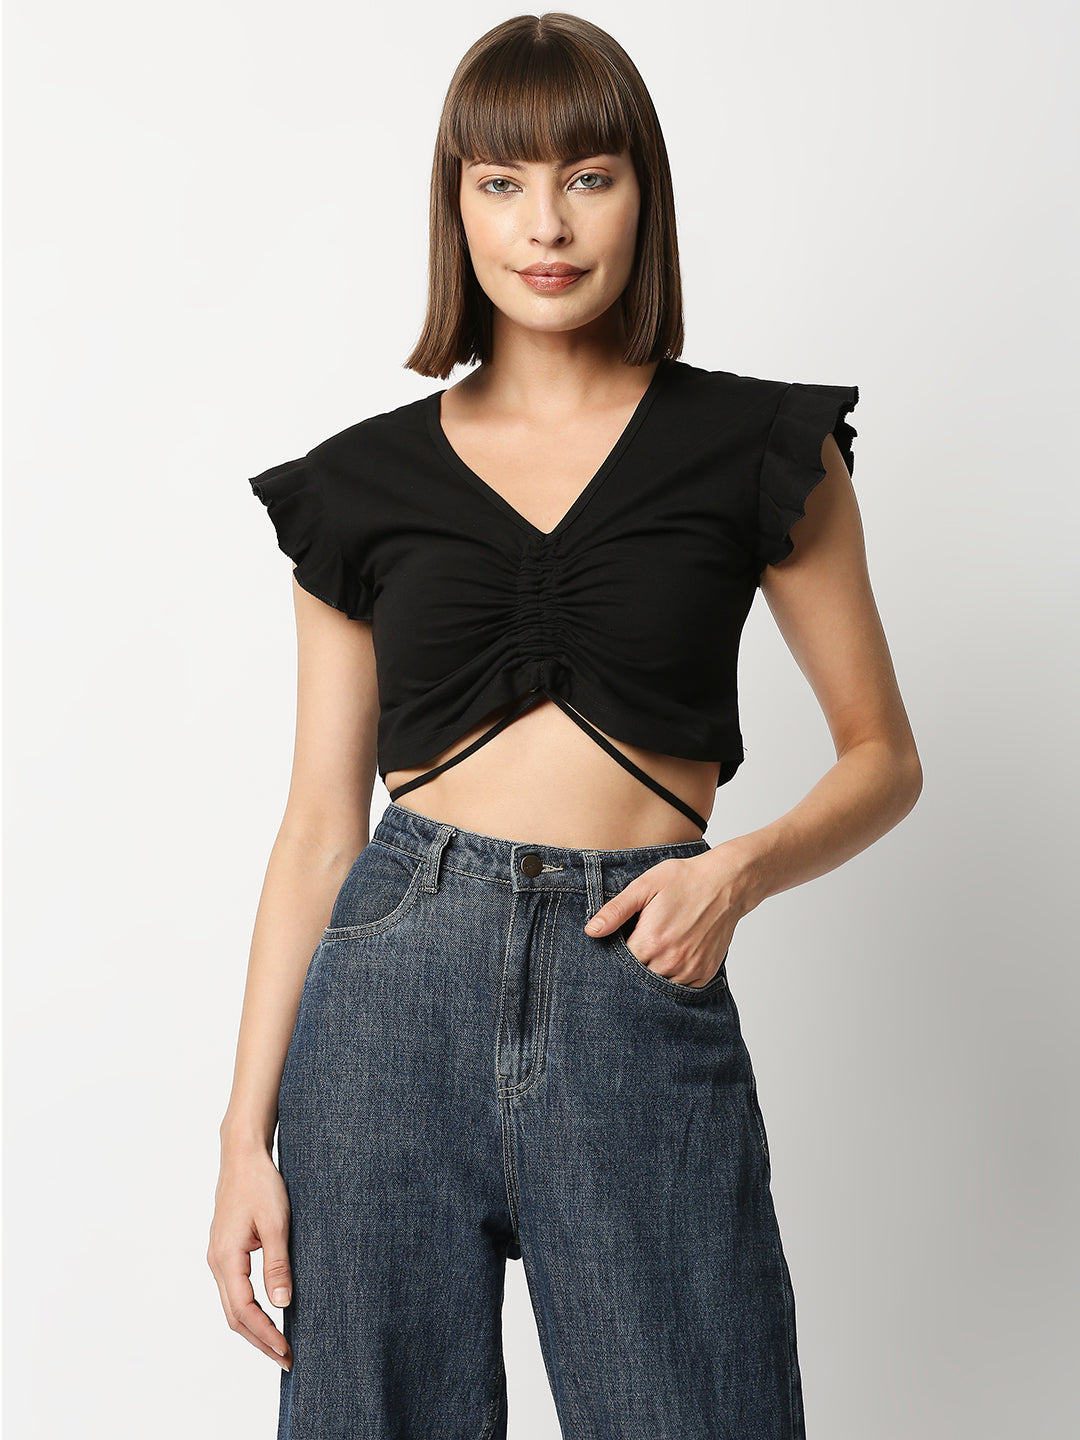 Buy BLAMBLACK Women V Neck Crop Top Black Color Solid Half sleeves